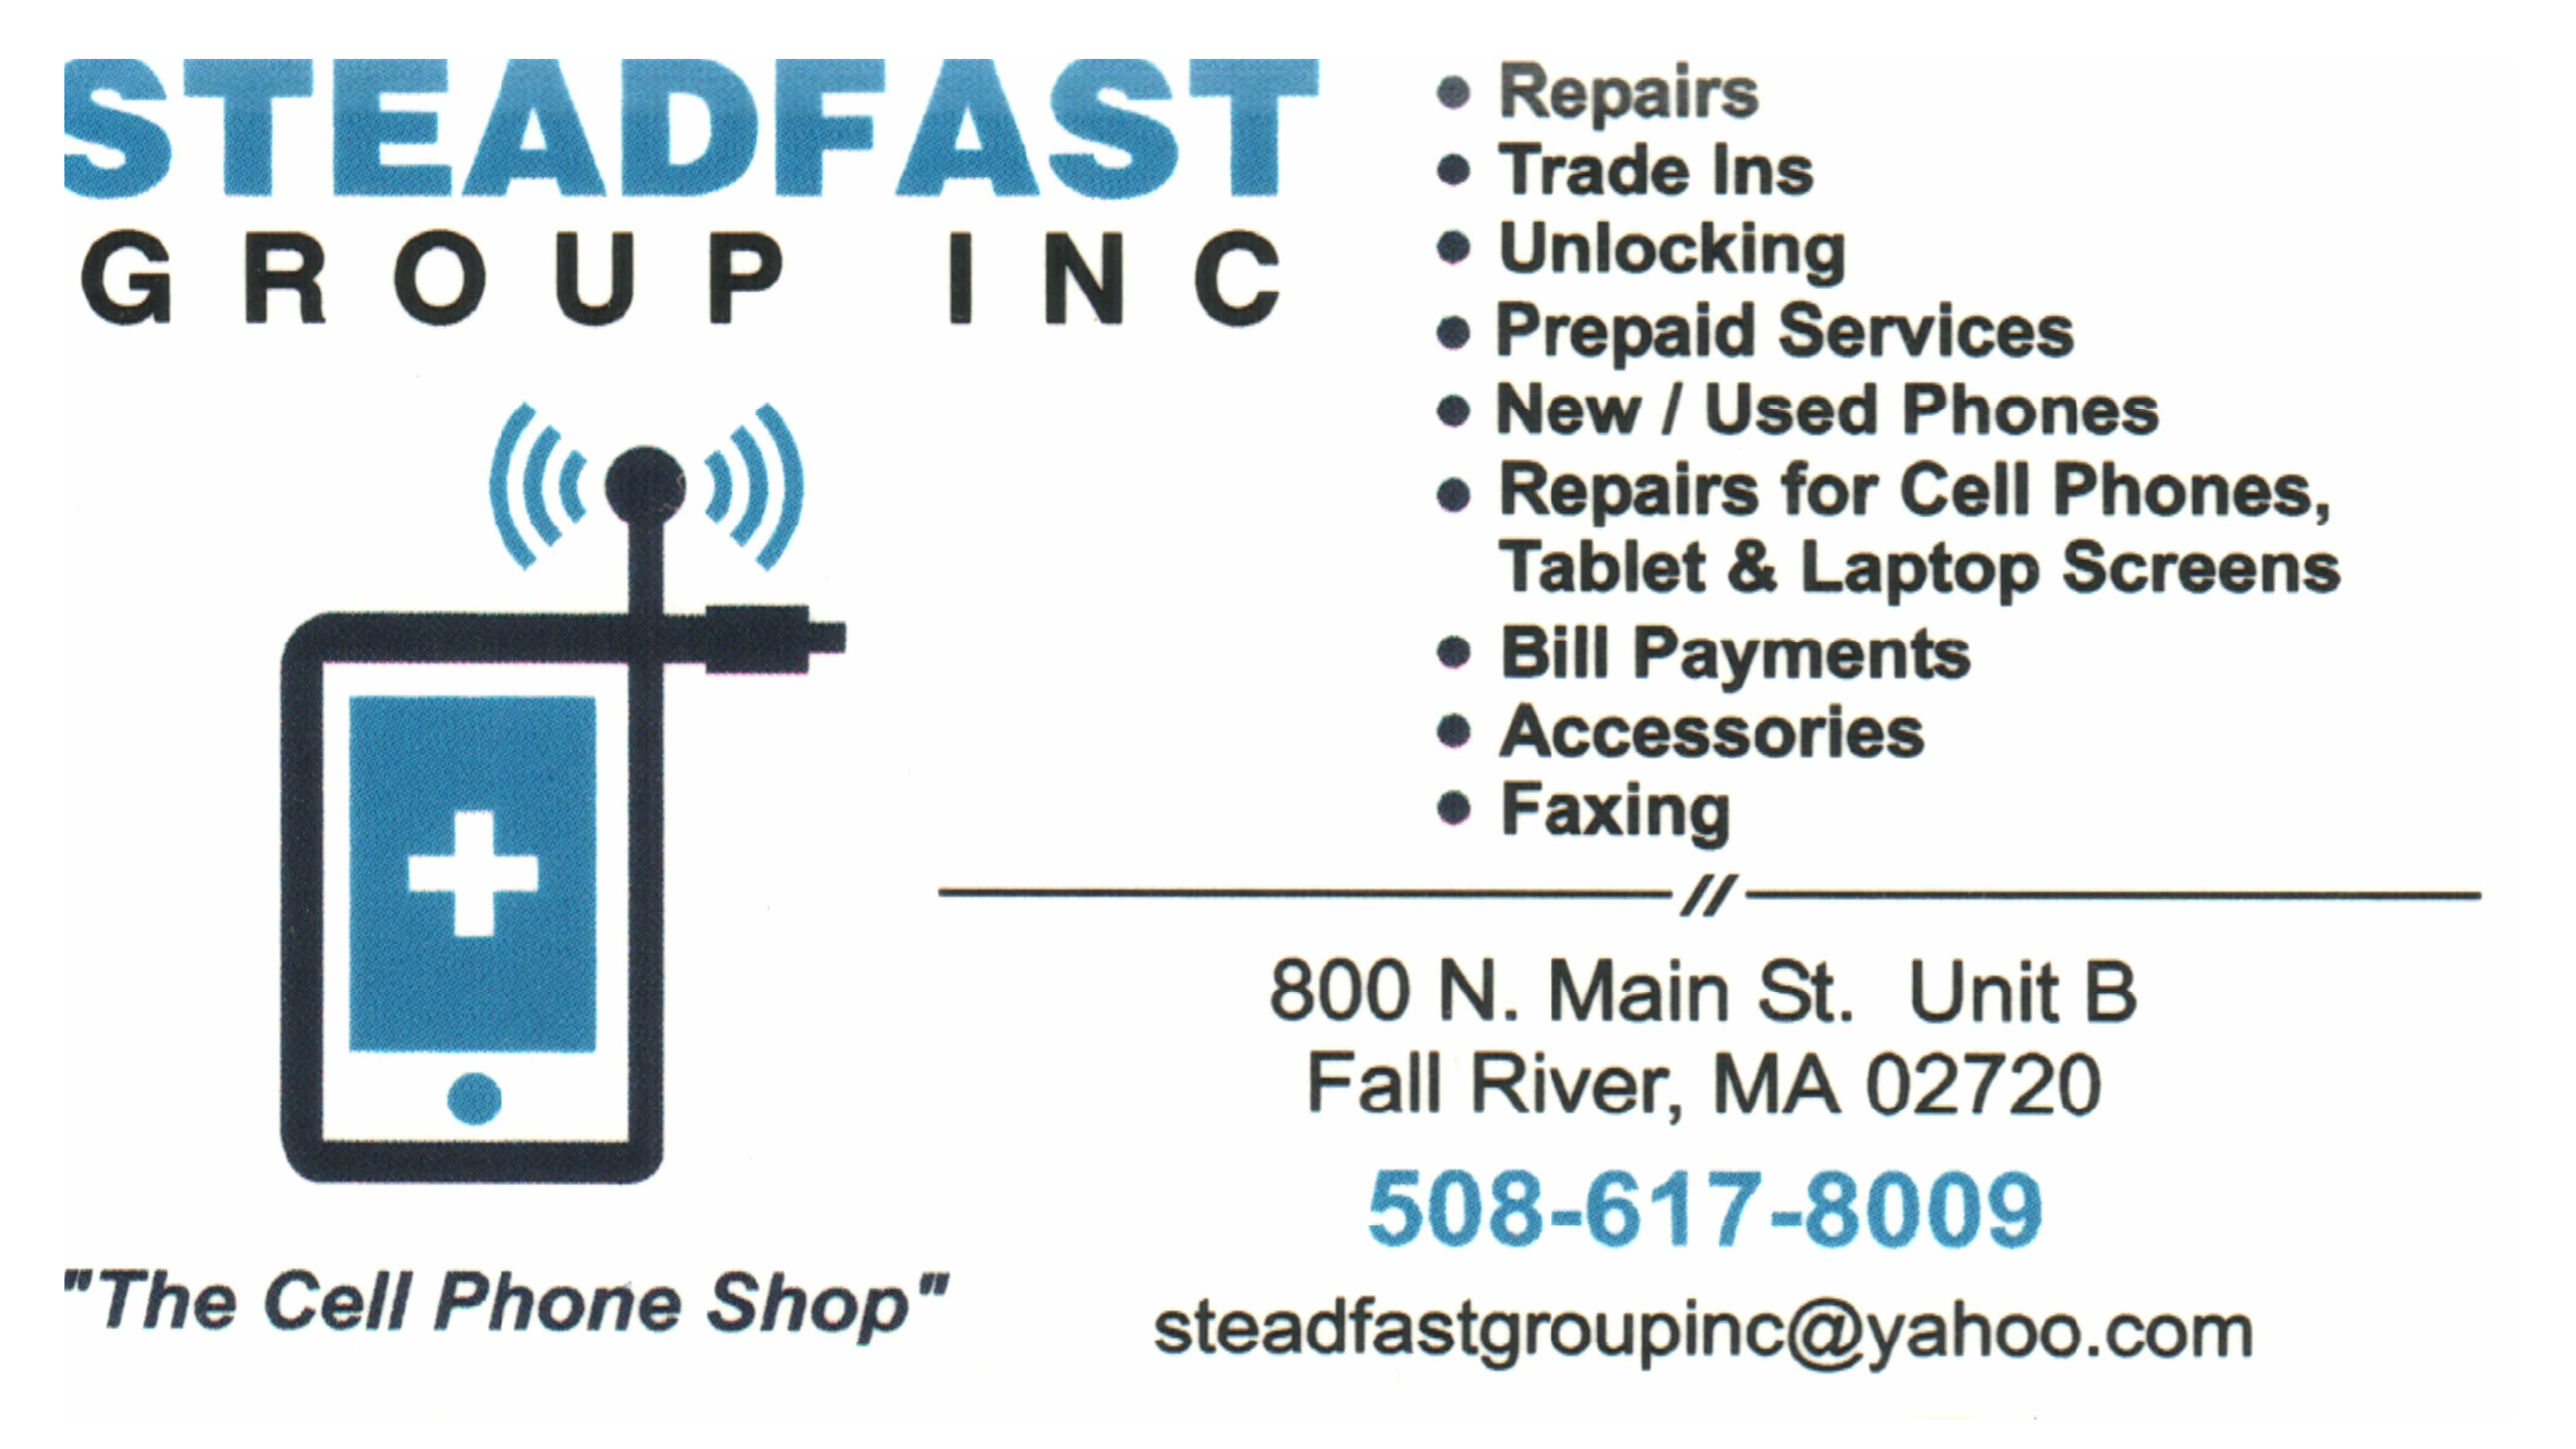 Steadfast Phone Sales and Repair